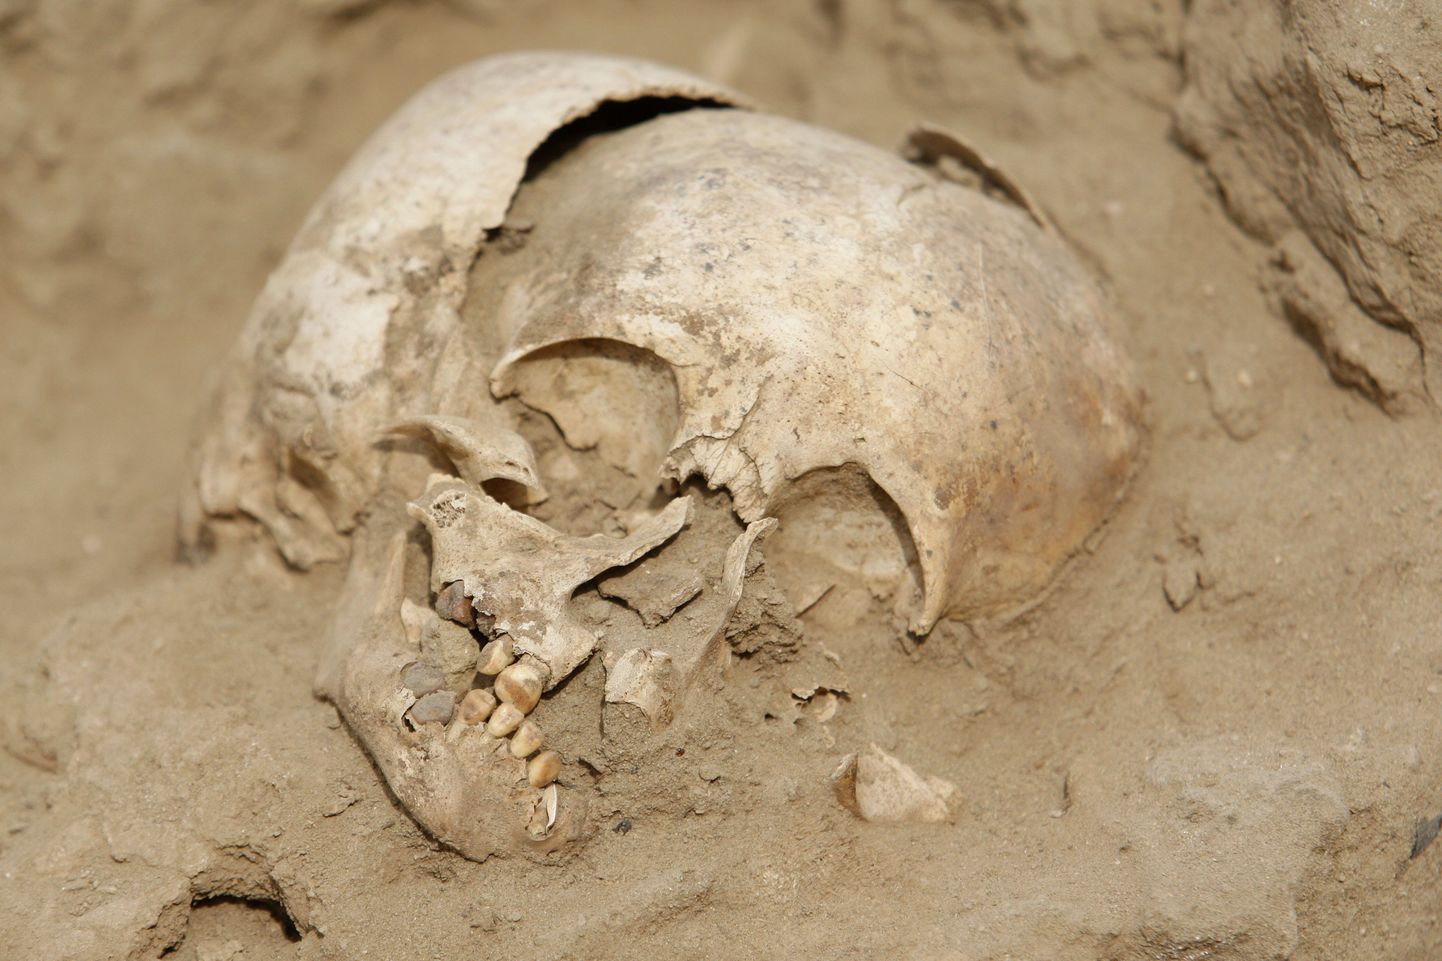 Peruust leiti tosina ohverdatud lapse jäänused